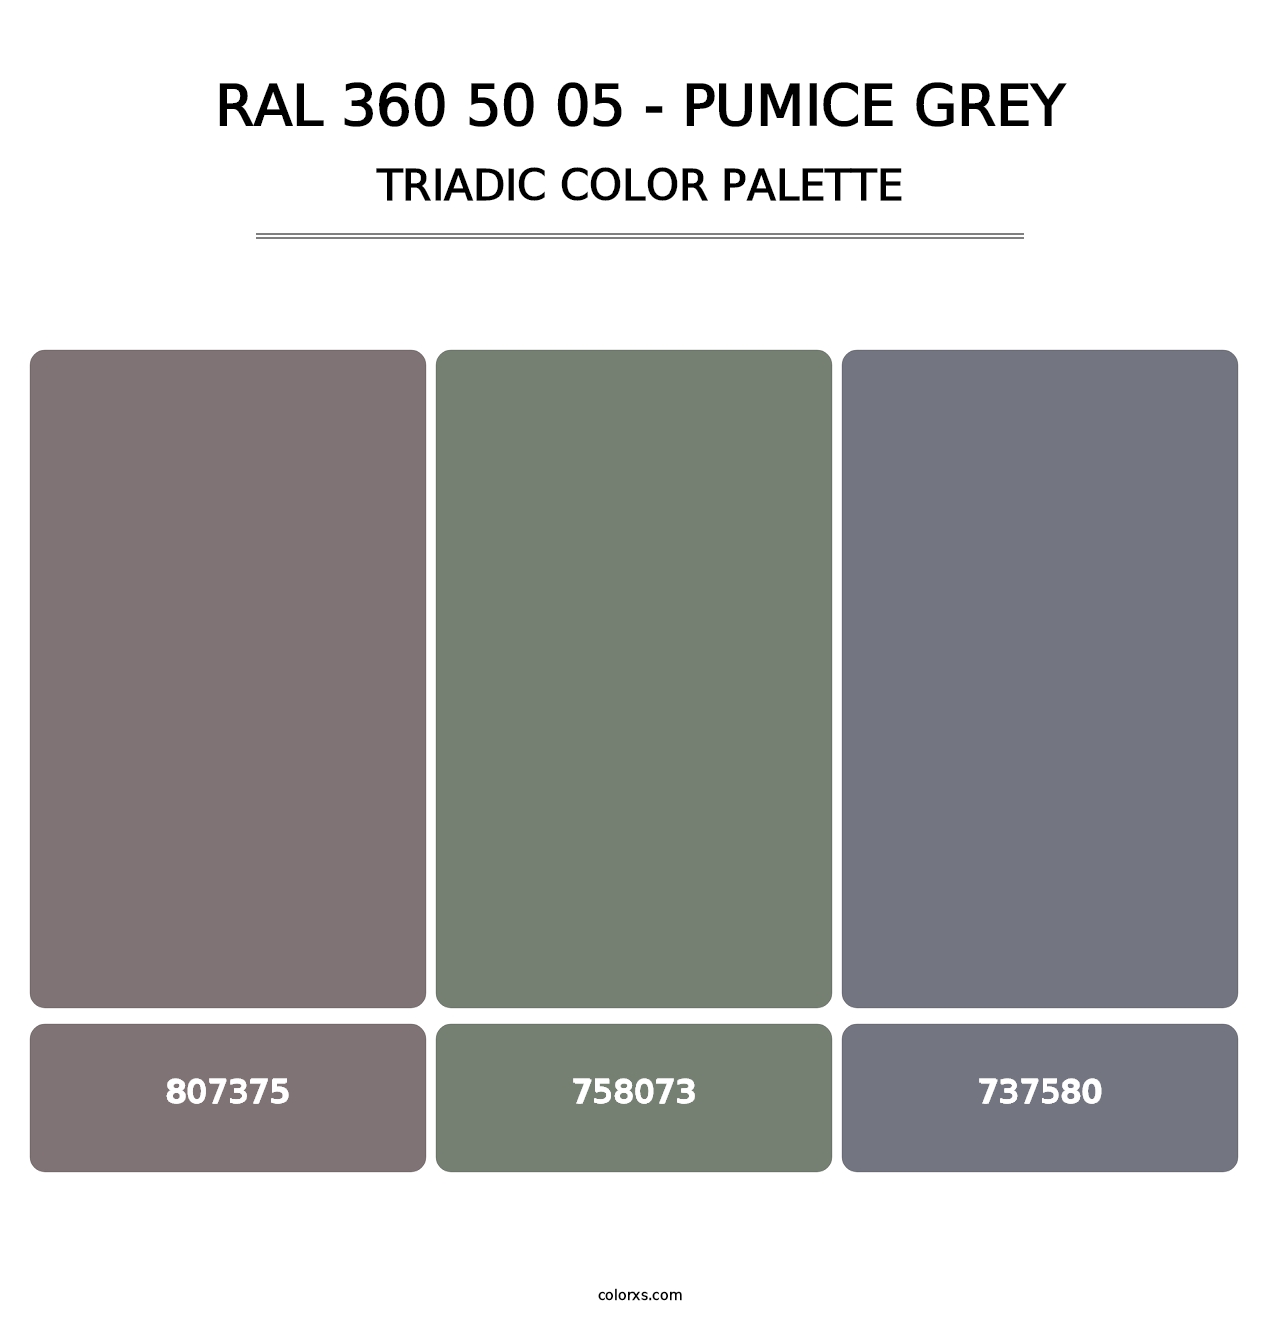 RAL 360 50 05 - Pumice Grey - Triadic Color Palette